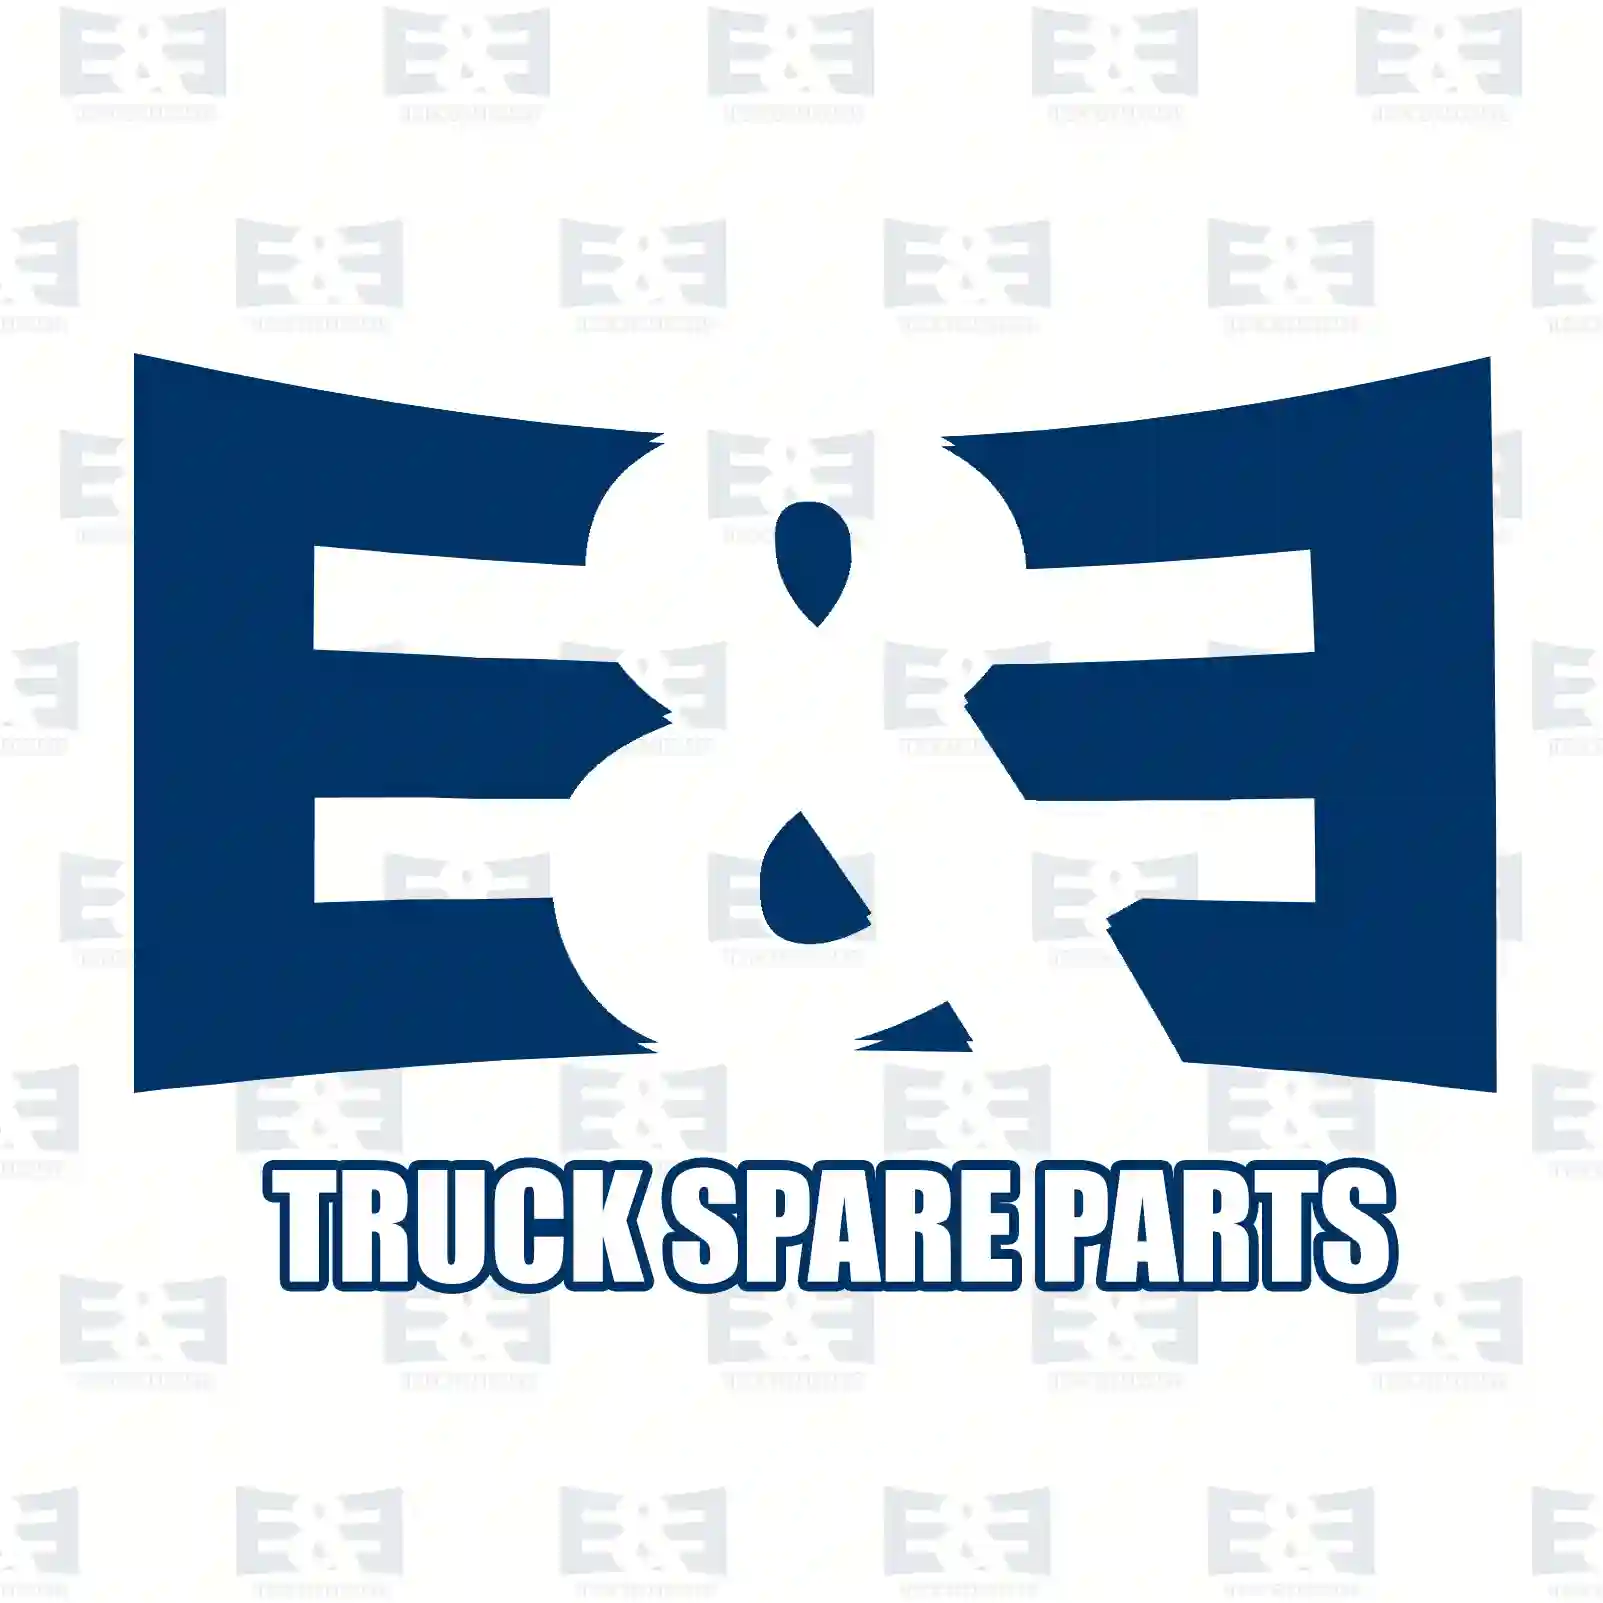 Toggle switch, 2E2290559, 81255050253, 81255050355, 81255050374, 81255050390 ||  2E2290559 E&E Truck Spare Parts | Truck Spare Parts, Auotomotive Spare Parts Toggle switch, 2E2290559, 81255050253, 81255050355, 81255050374, 81255050390 ||  2E2290559 E&E Truck Spare Parts | Truck Spare Parts, Auotomotive Spare Parts